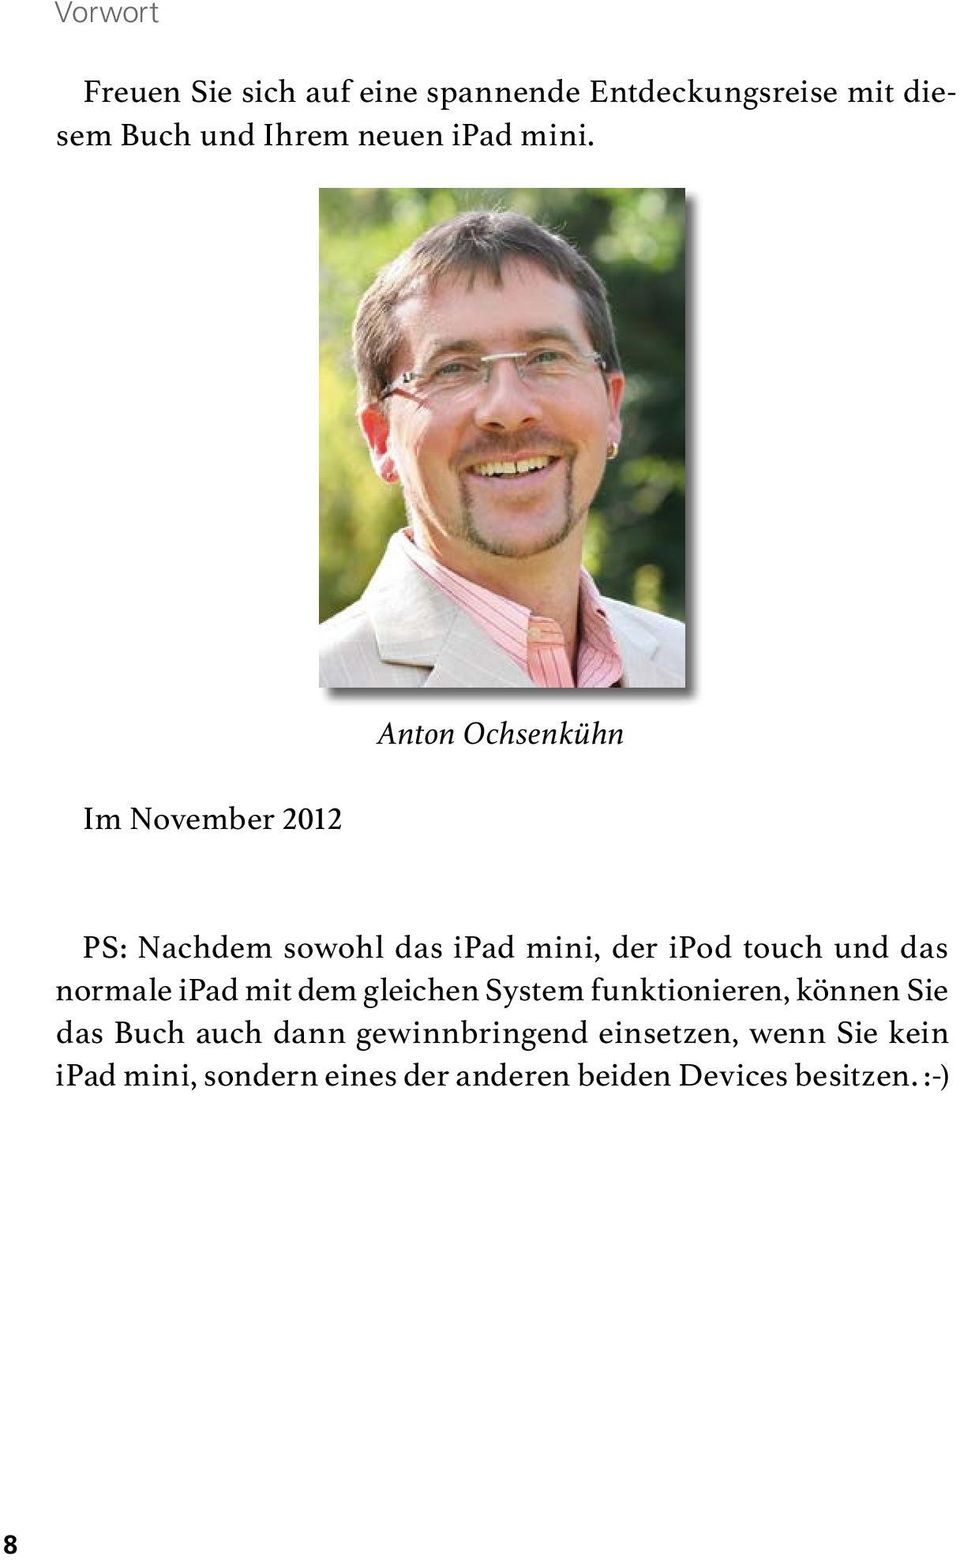 Im November 2012 Anton Ochsenkühn PS: Nachdem sowohl das ipad mini, der ipod touch und das